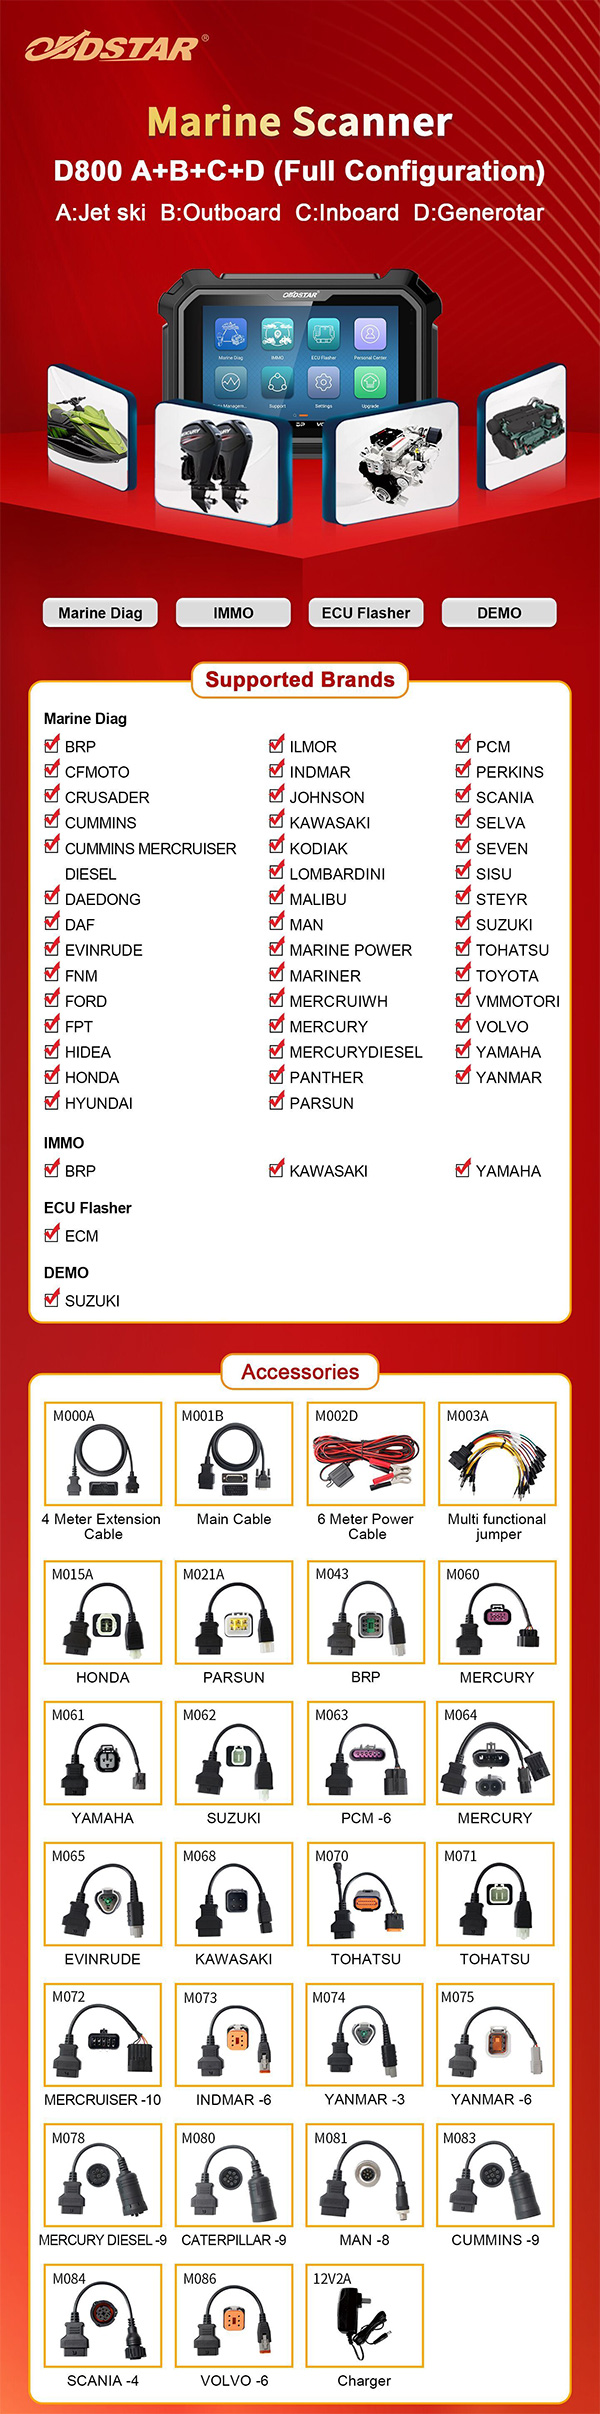 D800 A+B+C+D accessories